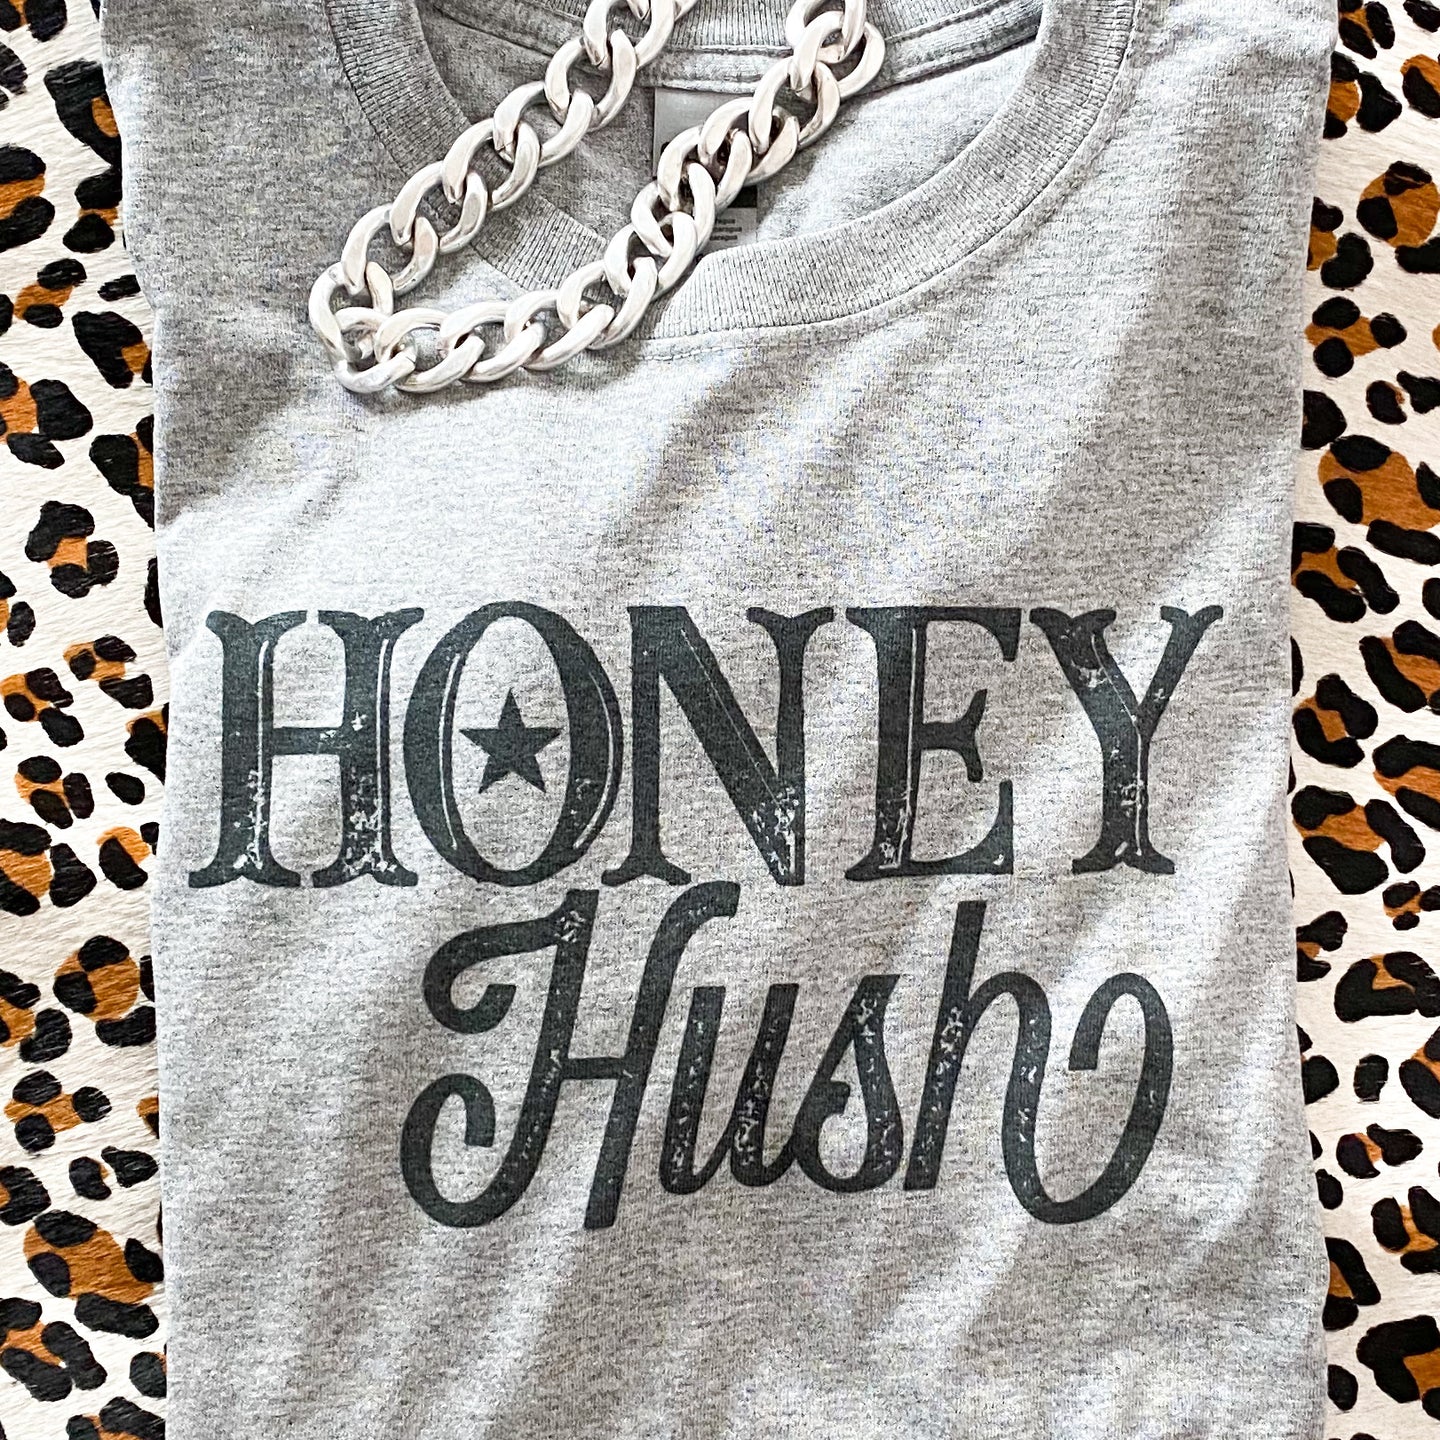 Honey Hush